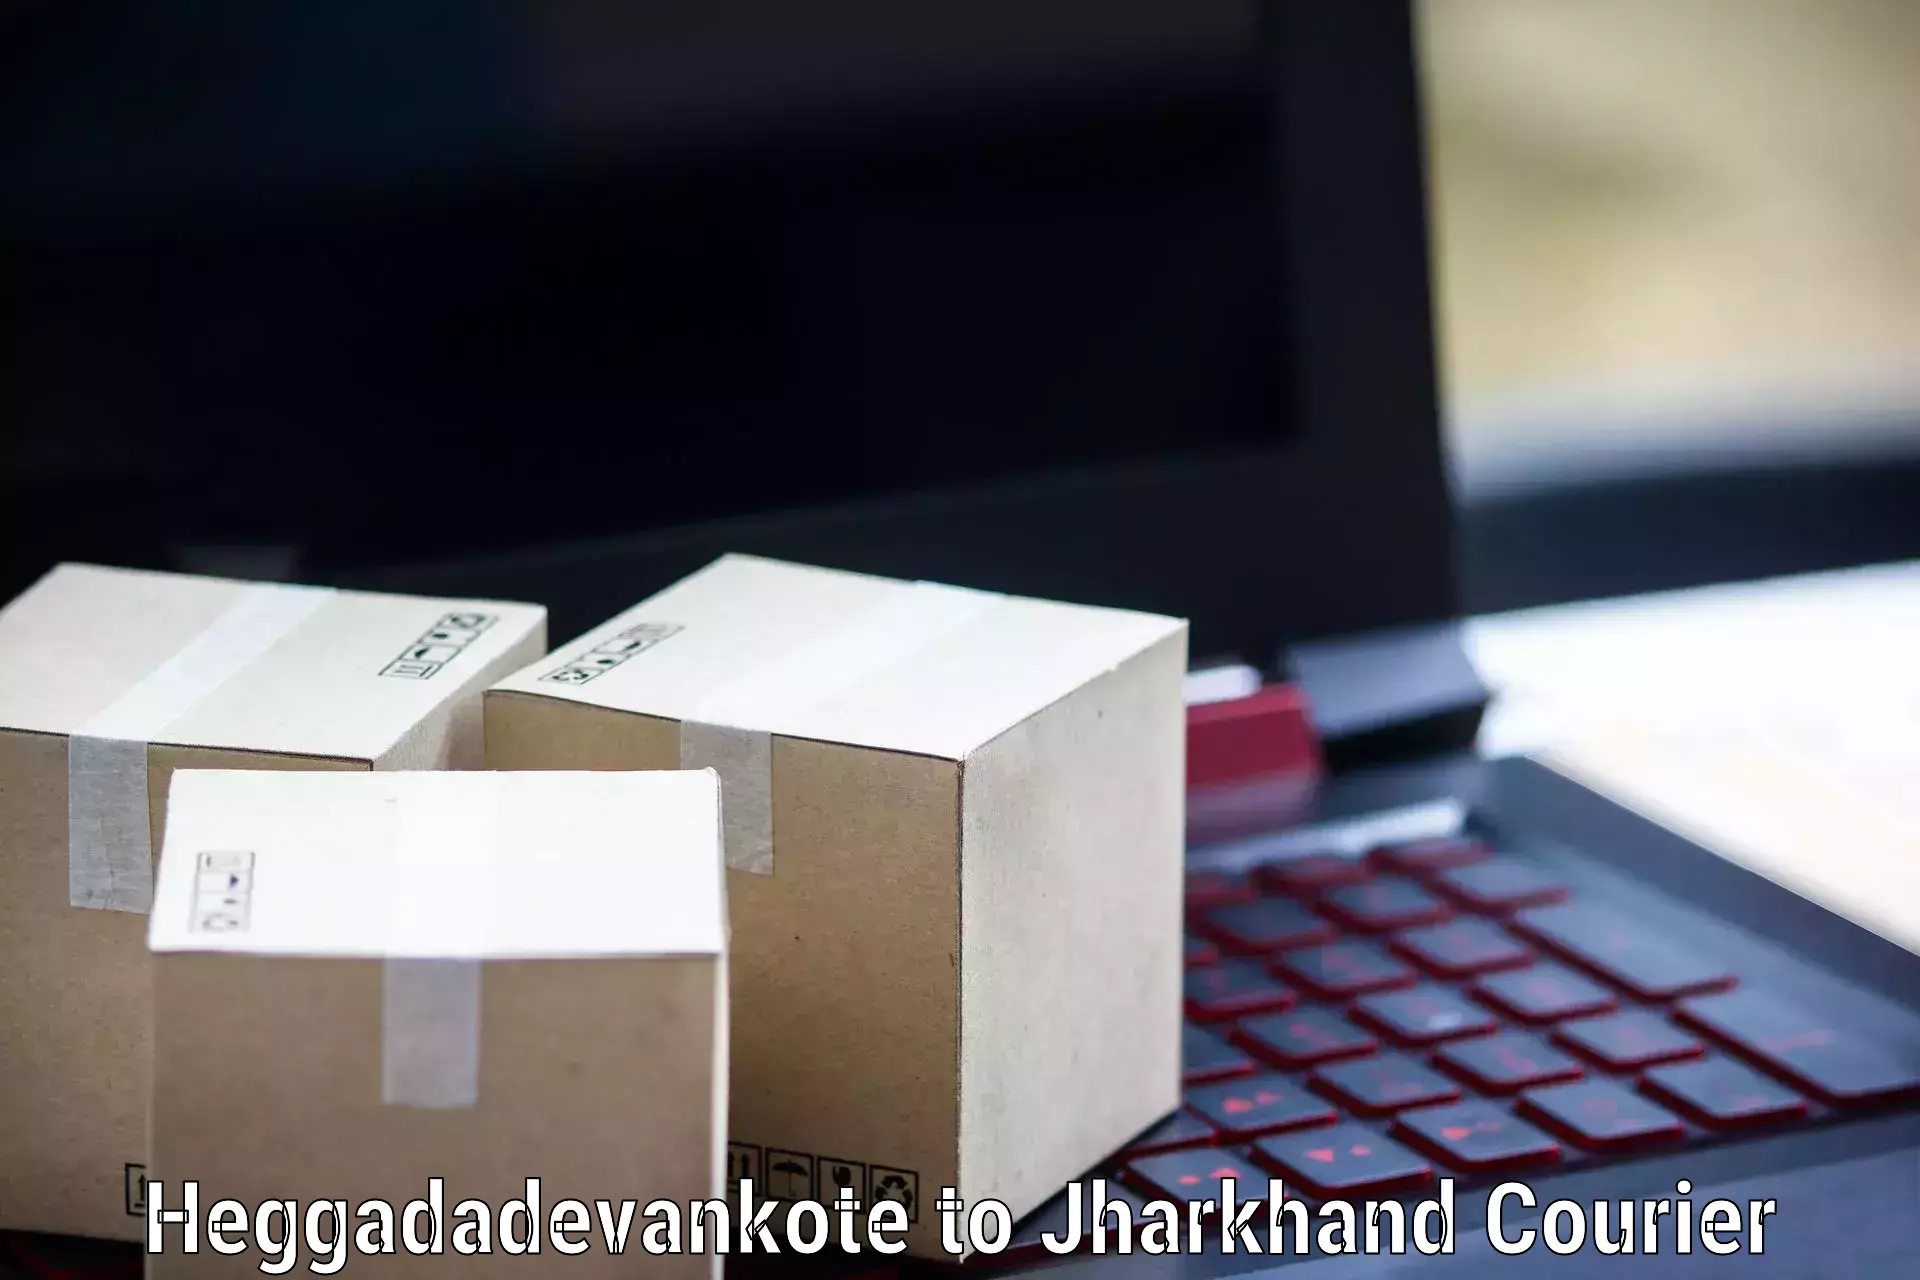 Next-generation courier services Heggadadevankote to Bundu